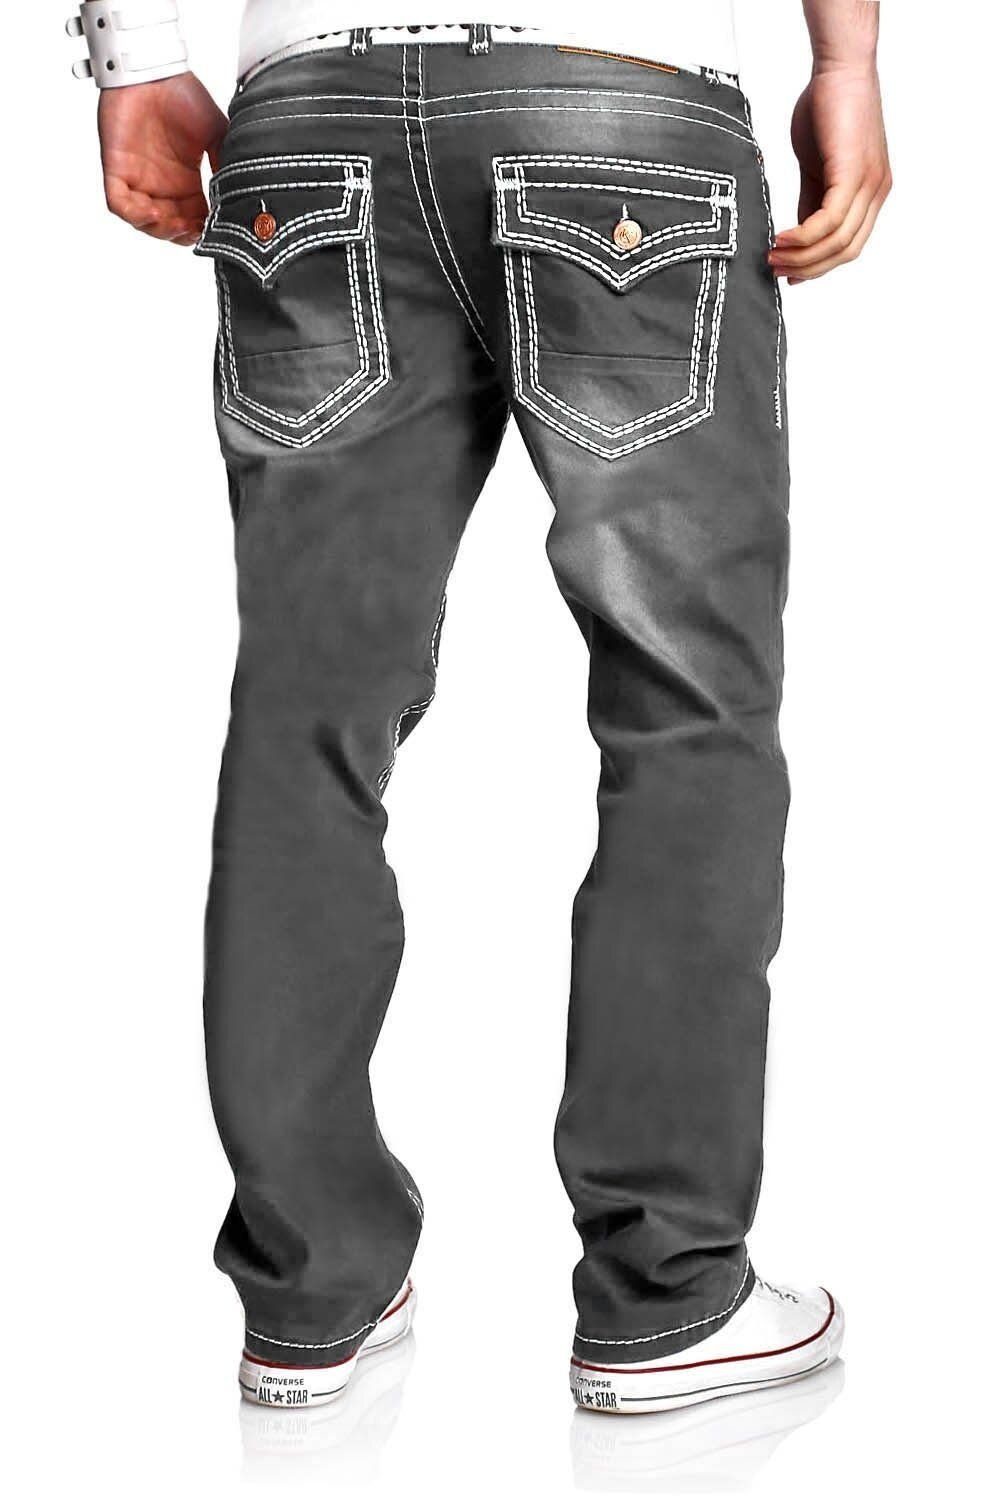 behype Bequeme Jeans Stitch mit grau dicken Kontrastnähten